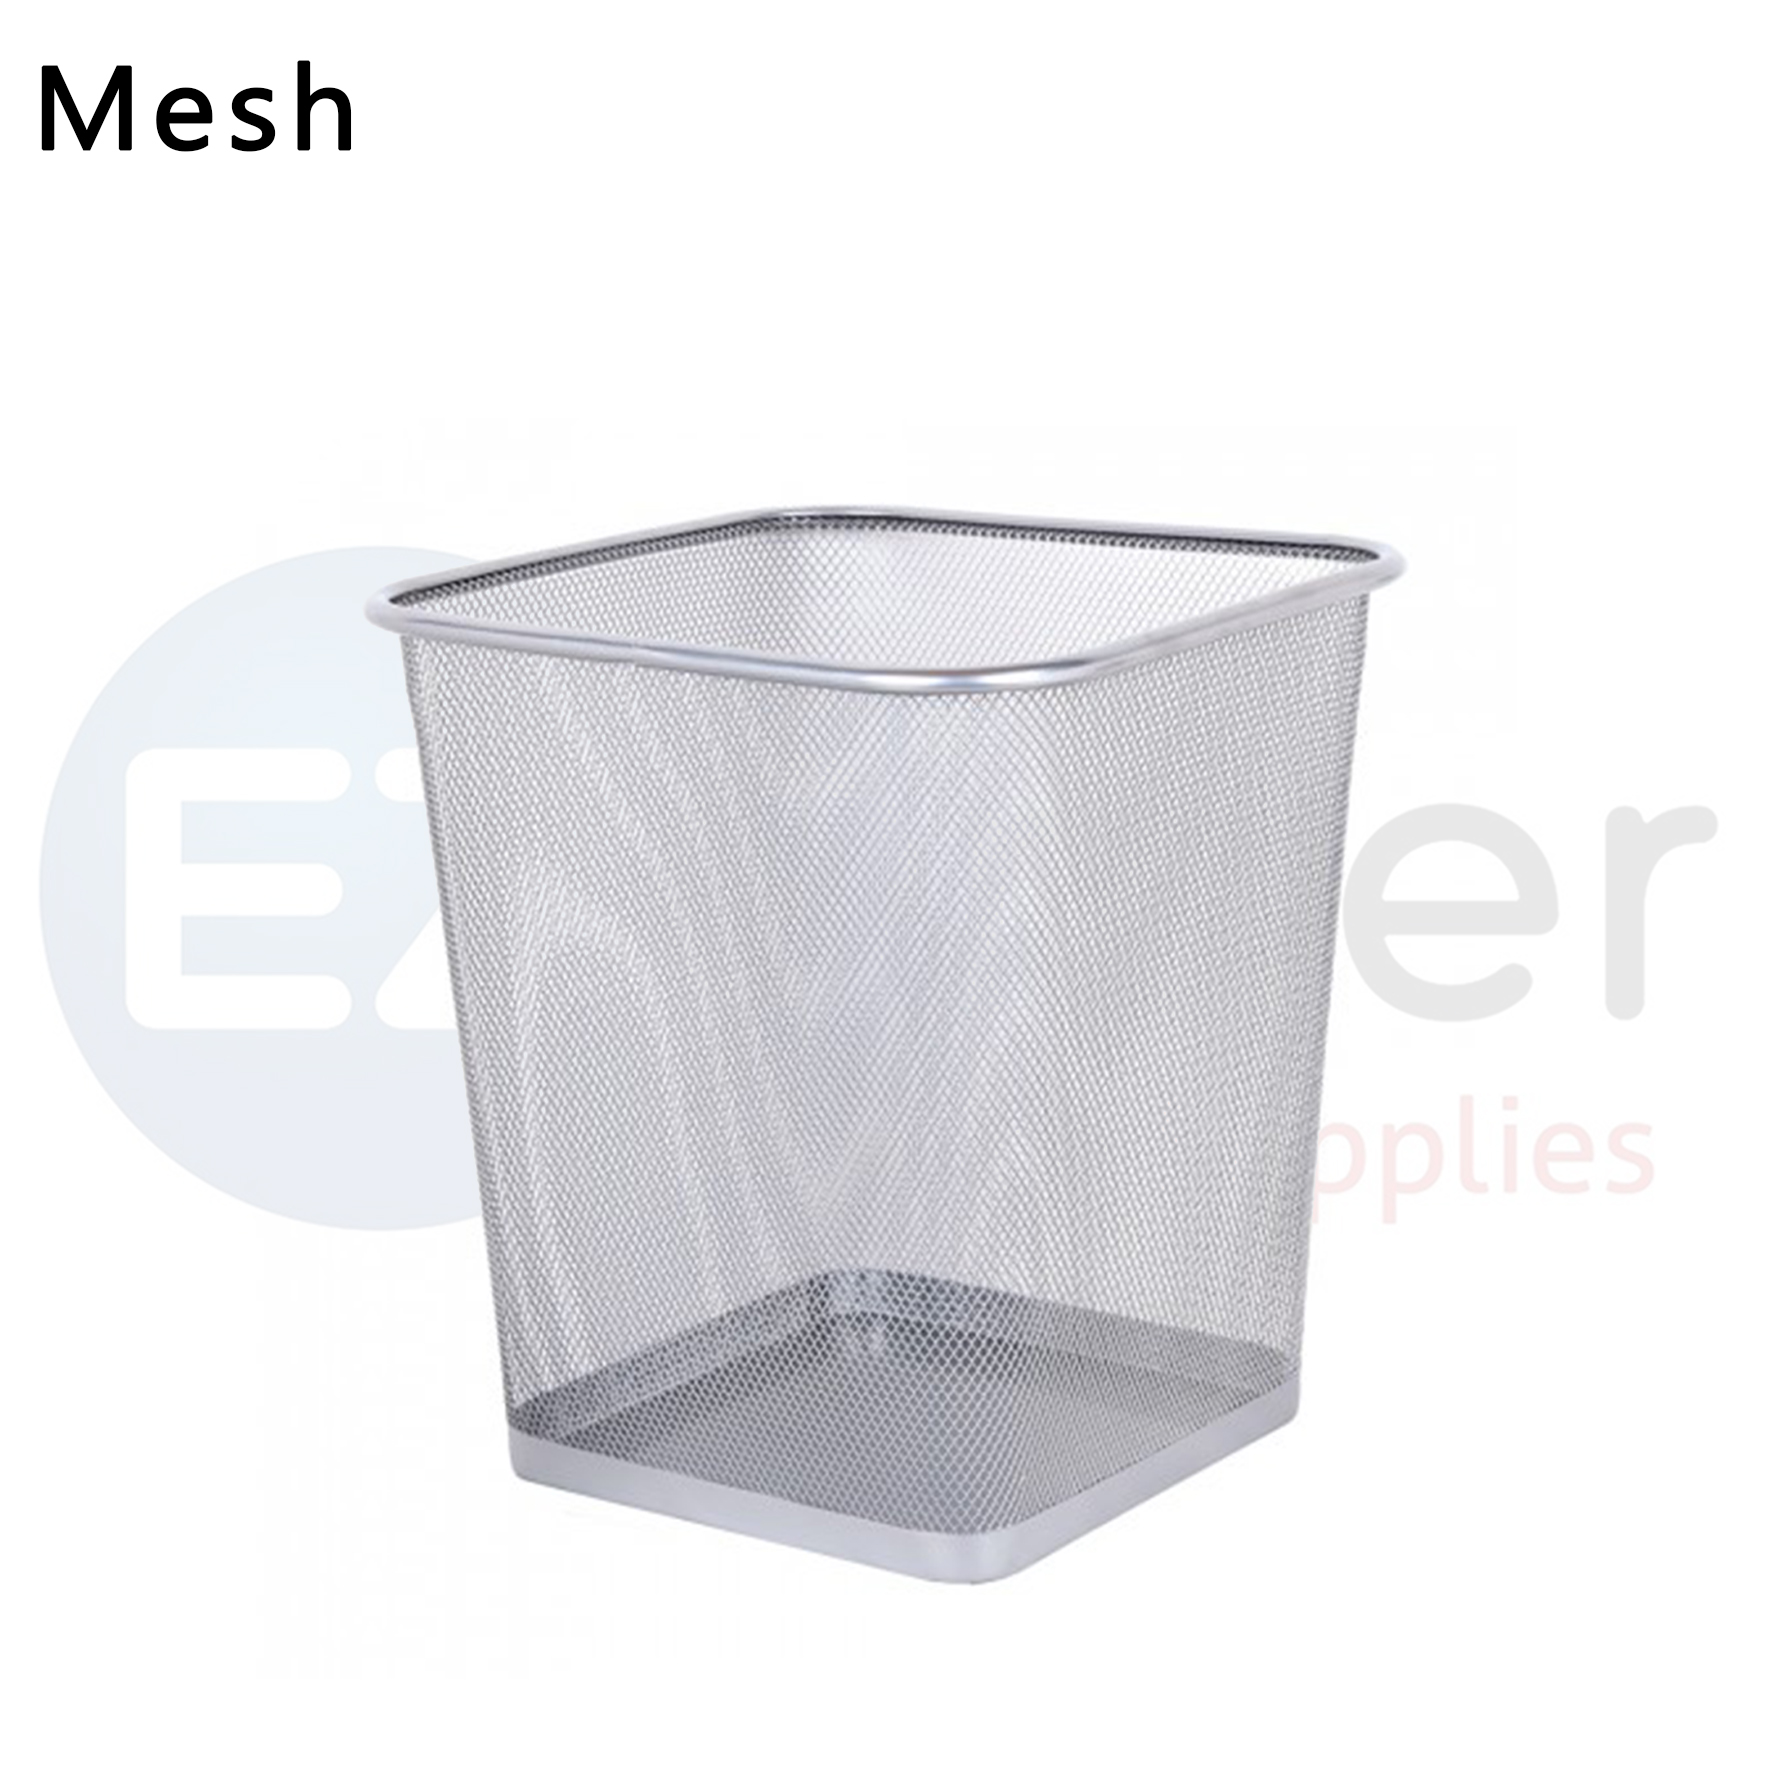 #Mesh Waste basket square shape 220*220*300